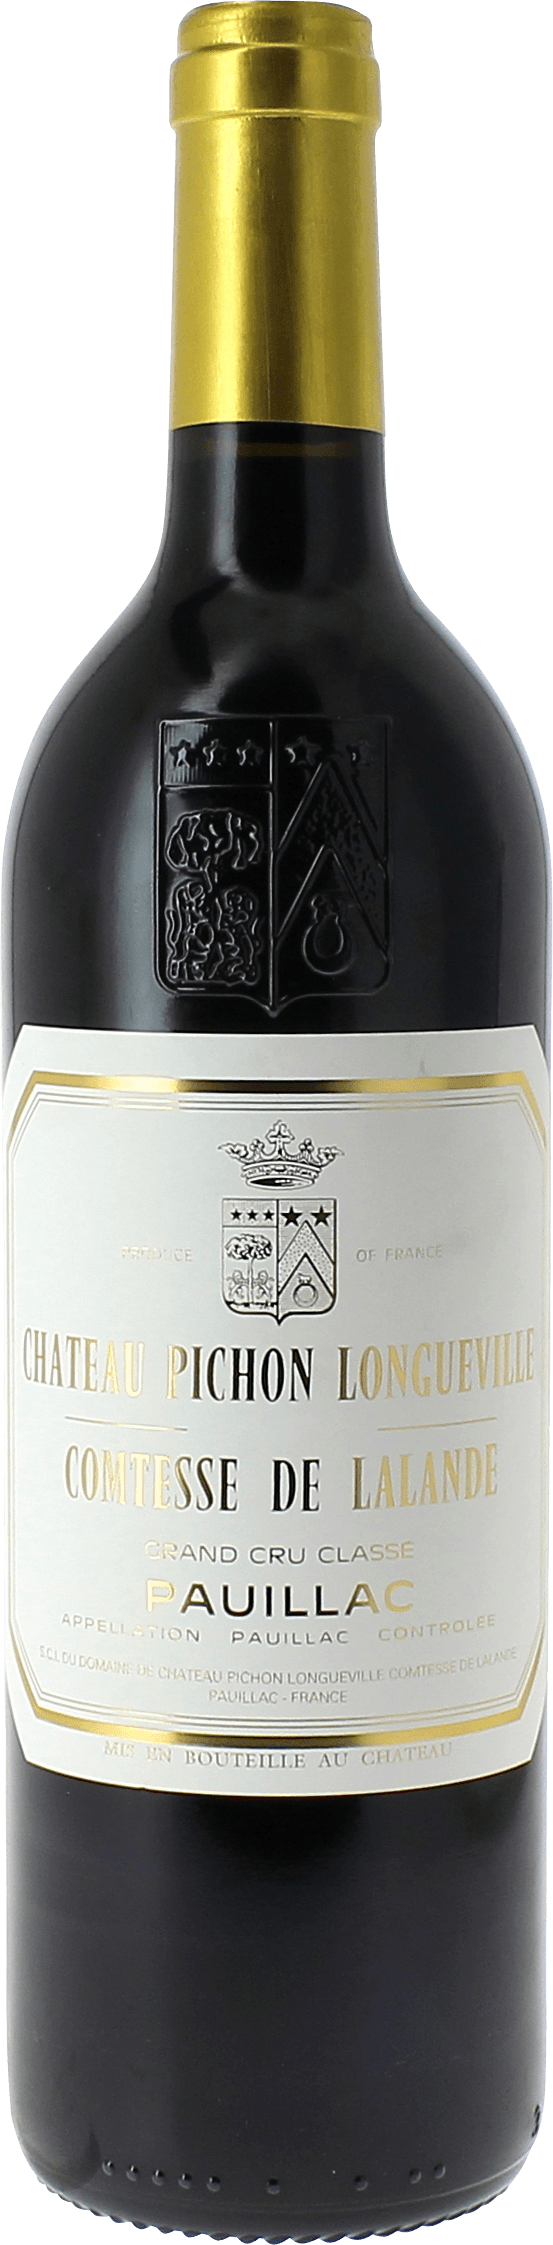 Pichon comtesse de lalande 1975 2me Grand cru class Pauillac, Bordeaux rouge